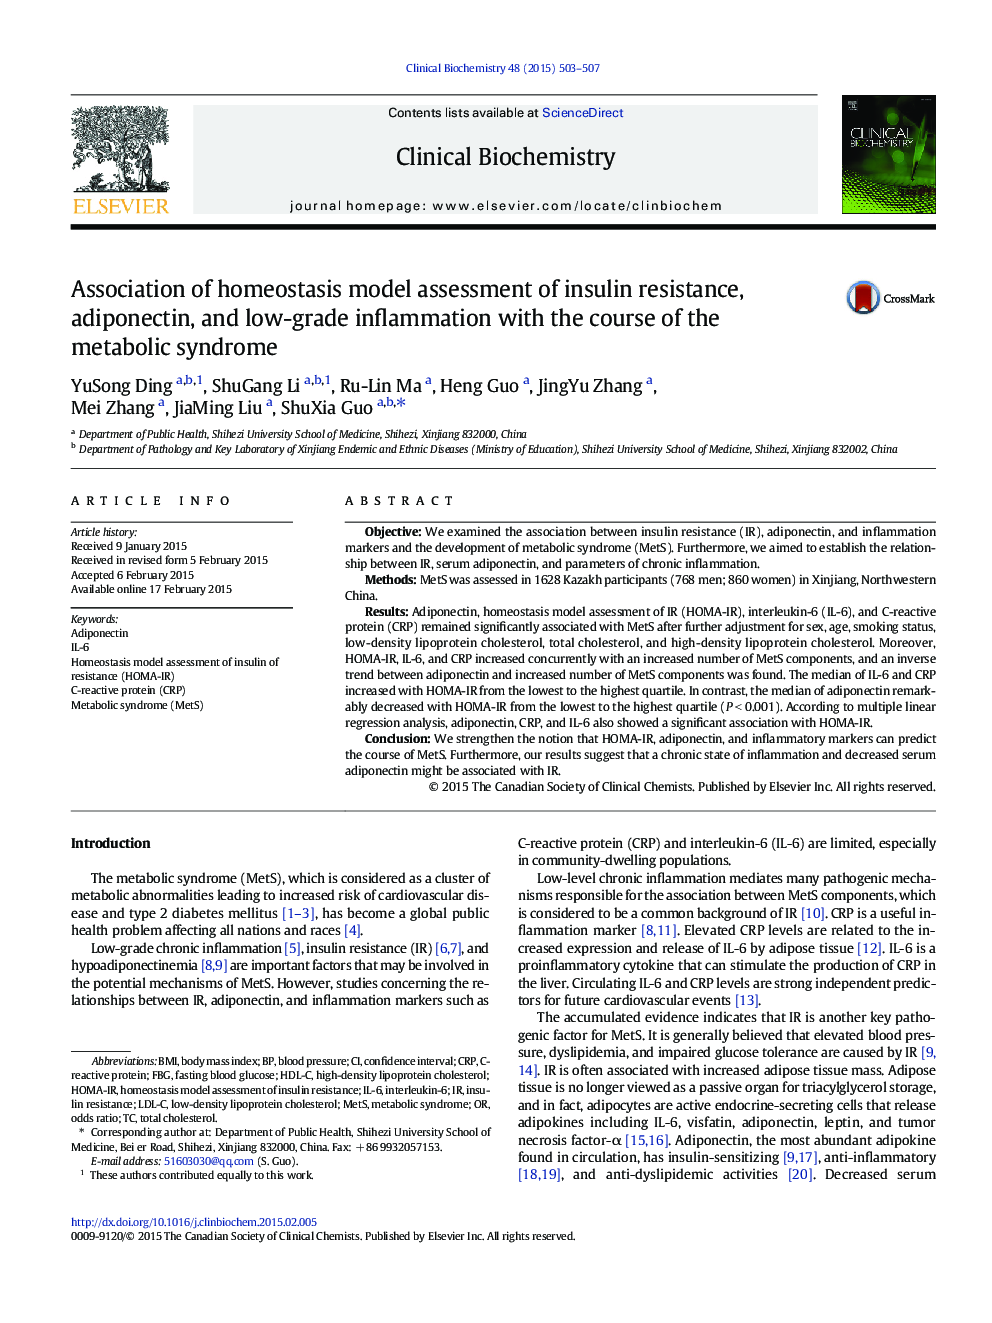 بررسی ارتباط مدل ارزیابی مقاومت به انسولین با مدل هوموستاز، آدیپونکتین و التهاب ملایم با دوره سندرم متابولیک 